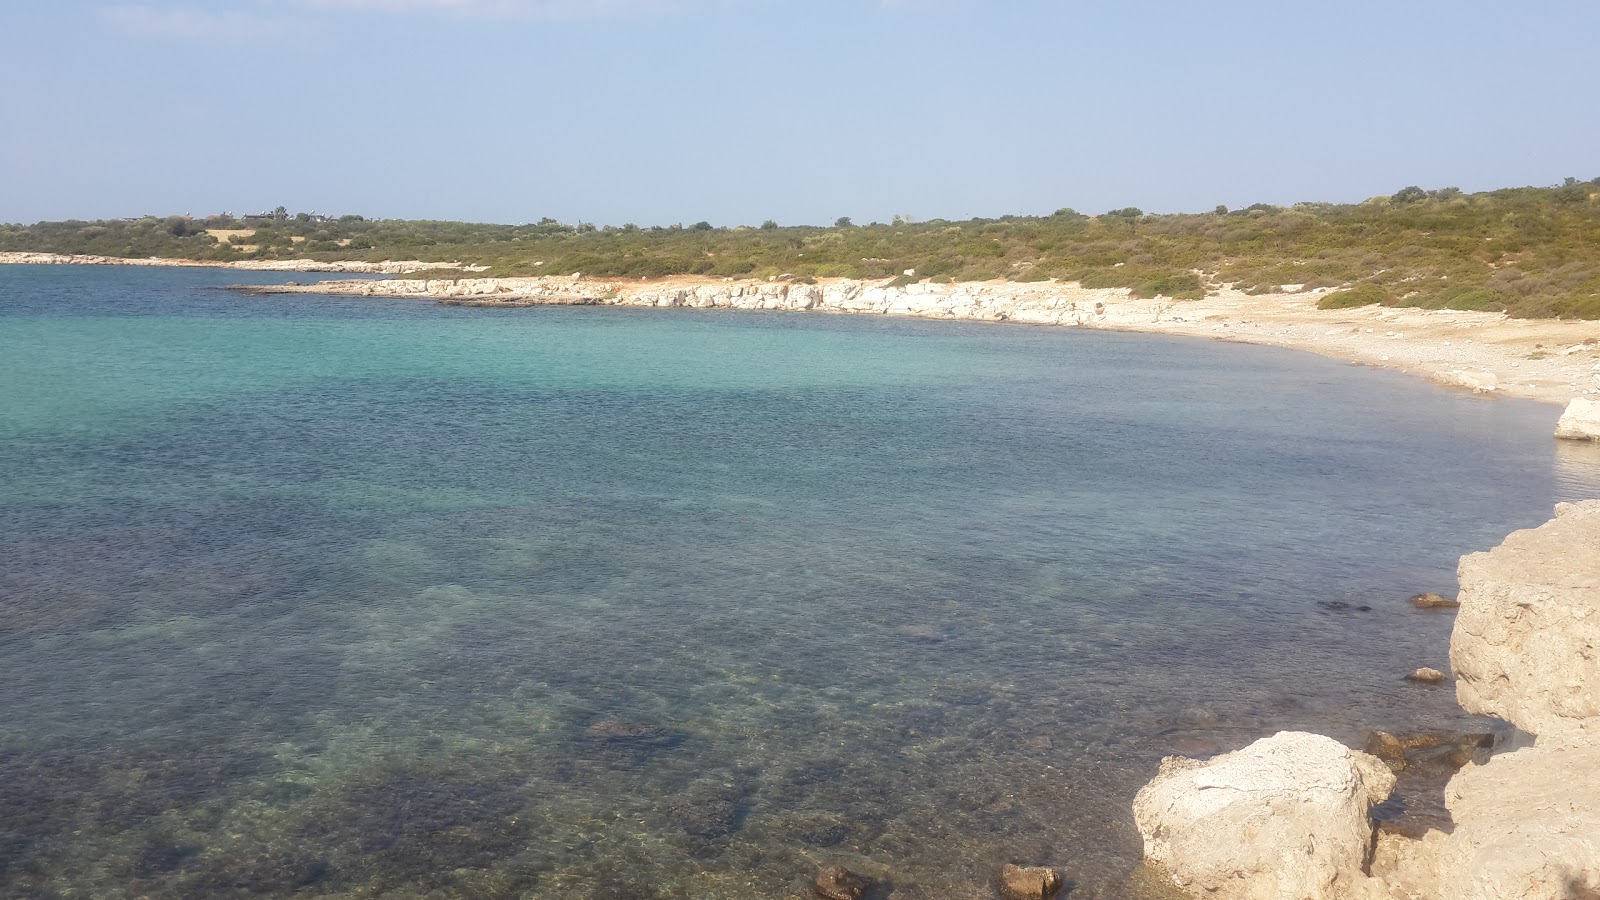 Akvaryum plajı'in fotoğrafı turkuaz saf su yüzey ile